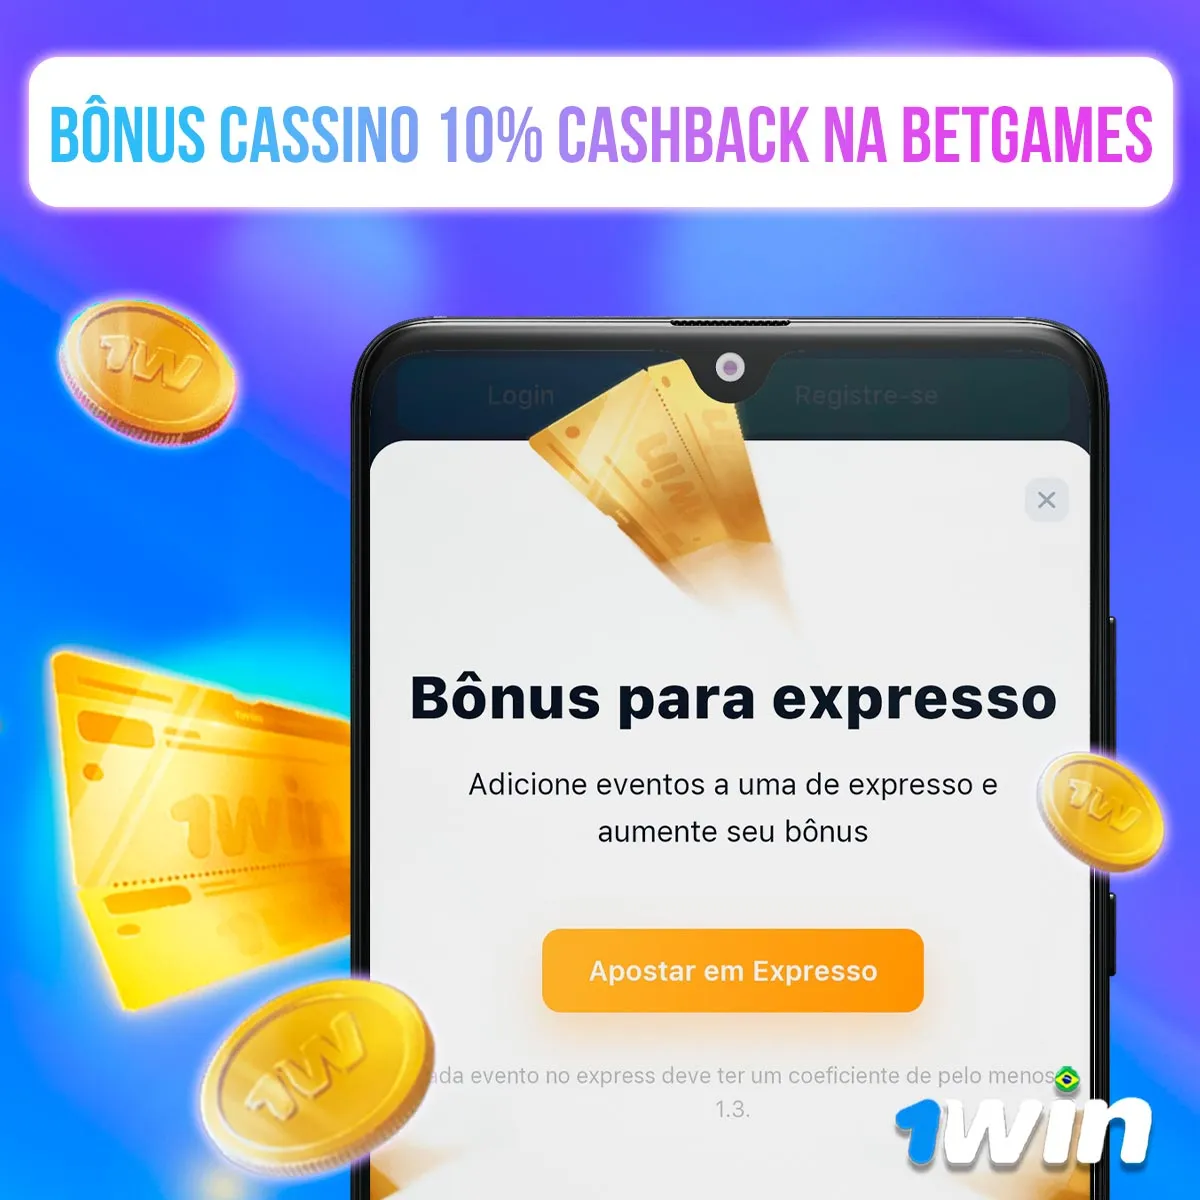 Bônus de cassino 10% Cashback na BetGames da casa de apostas 1win no mercado brasileiro